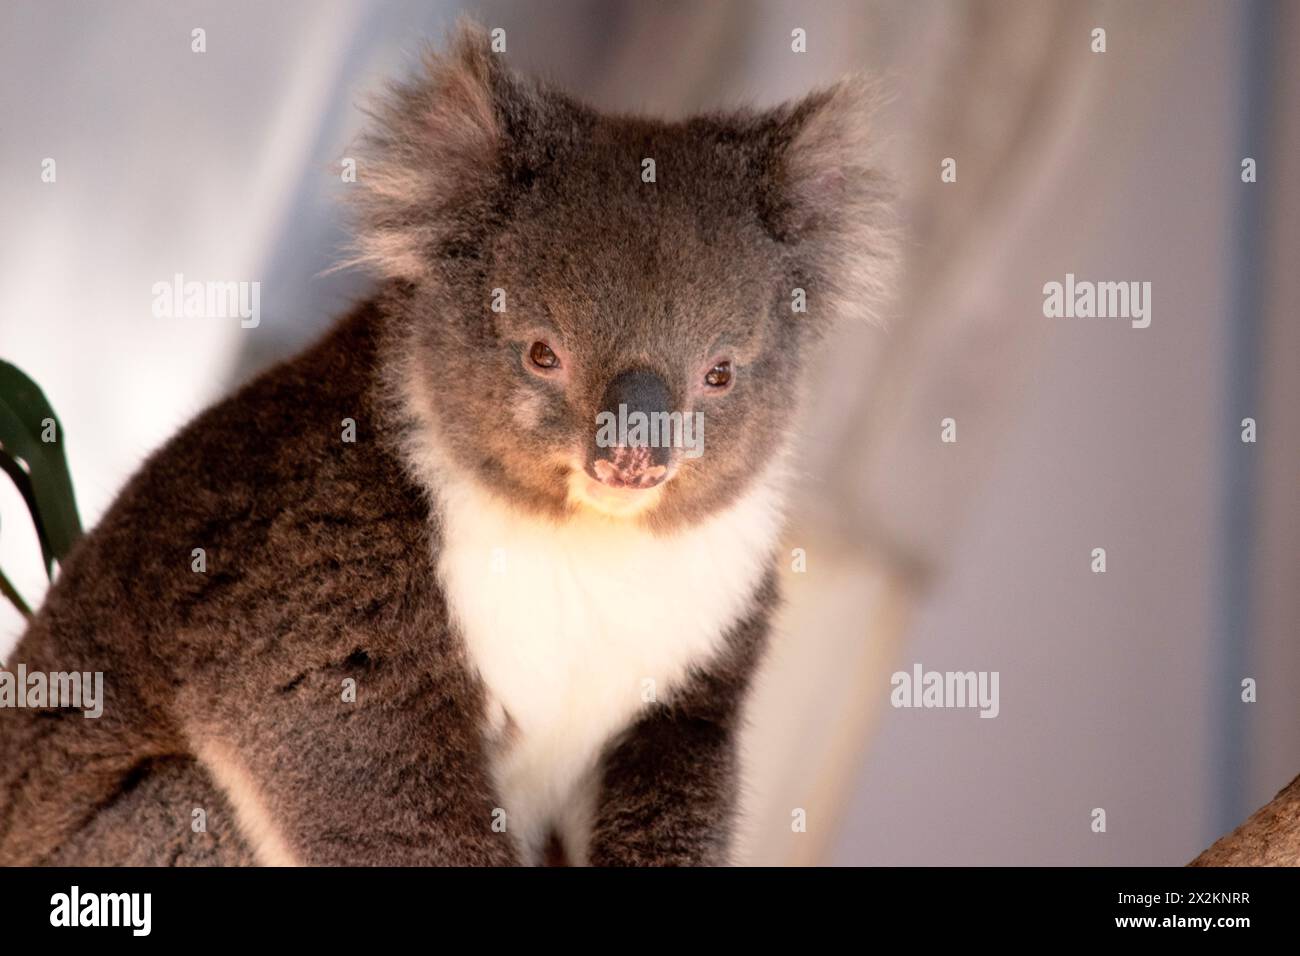 Der Koala hat einen großen runden Kopf, große pelzige Ohren und große schwarze Nase. Ihr Fell ist meist grau-braun mit weißem Fell auf der Brust, den inneren Armen, Stockfoto